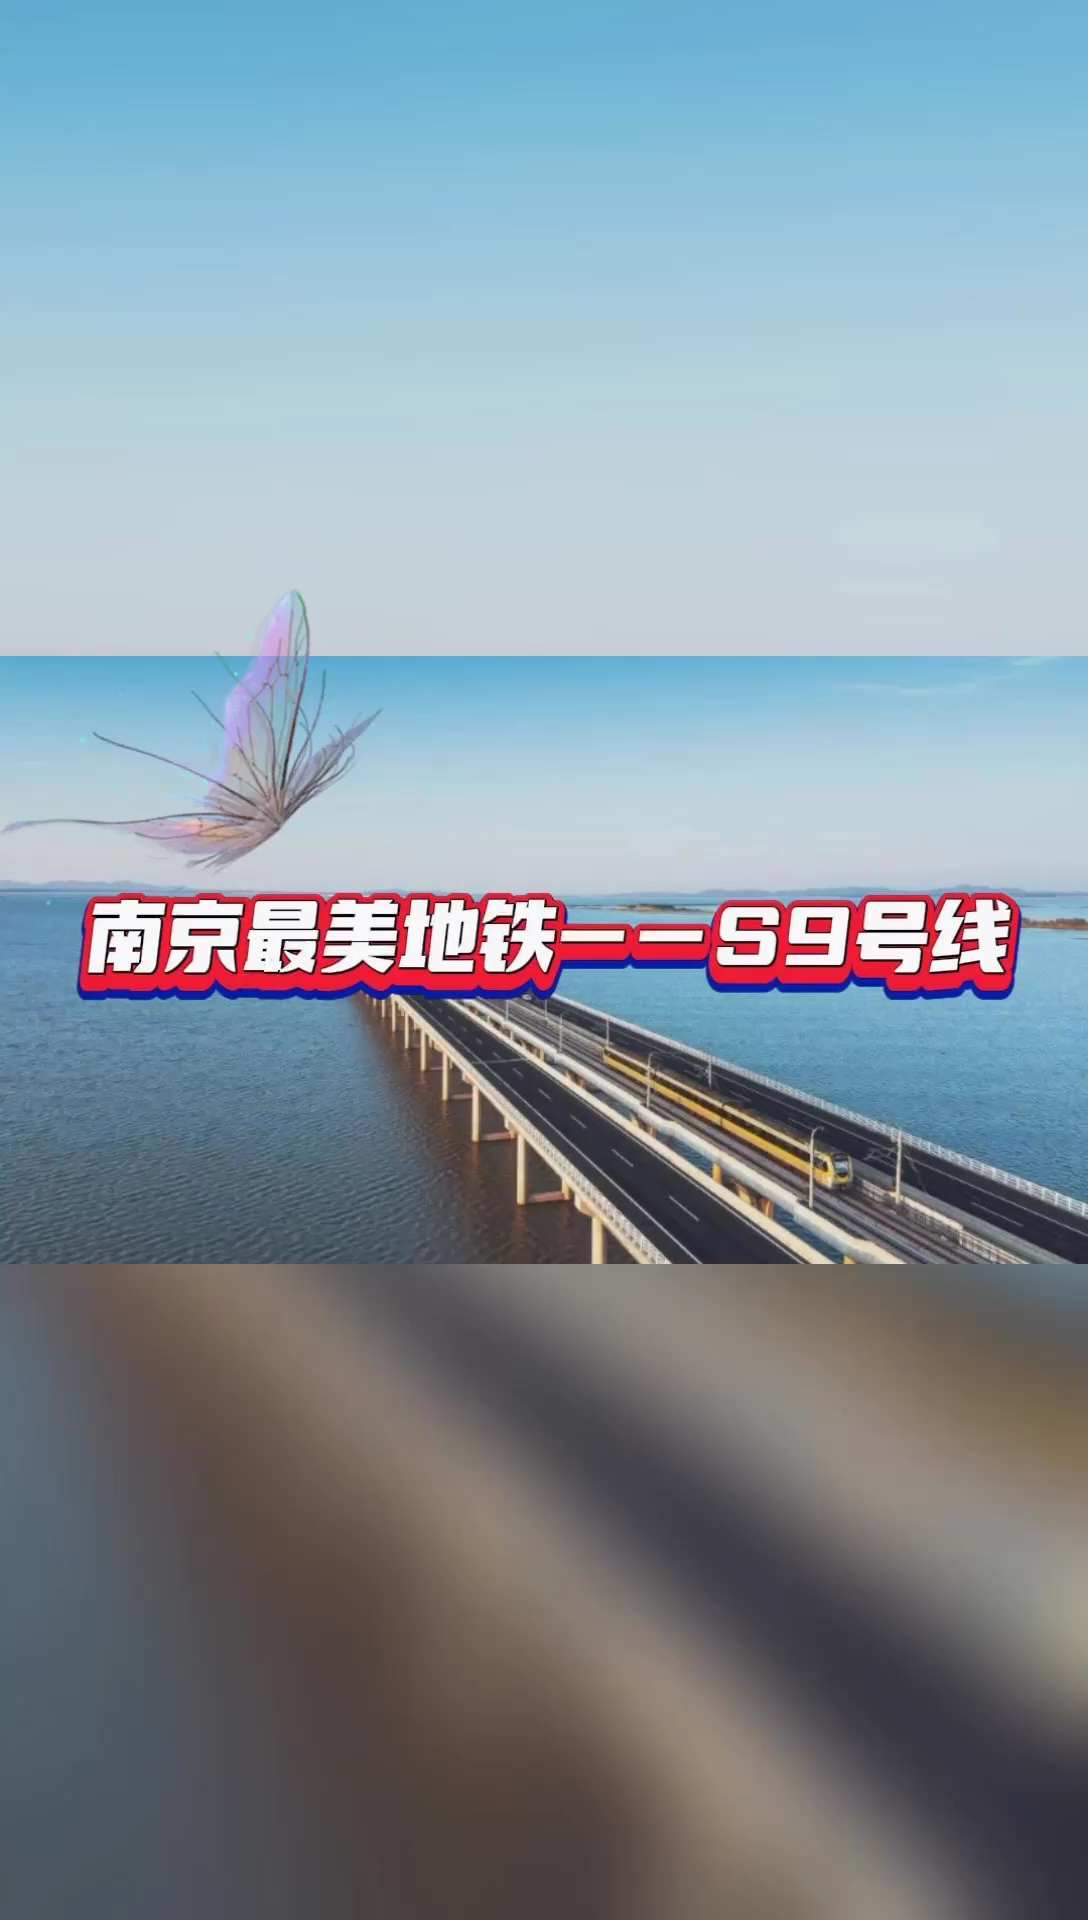 南京网红地铁S9—天空之镜